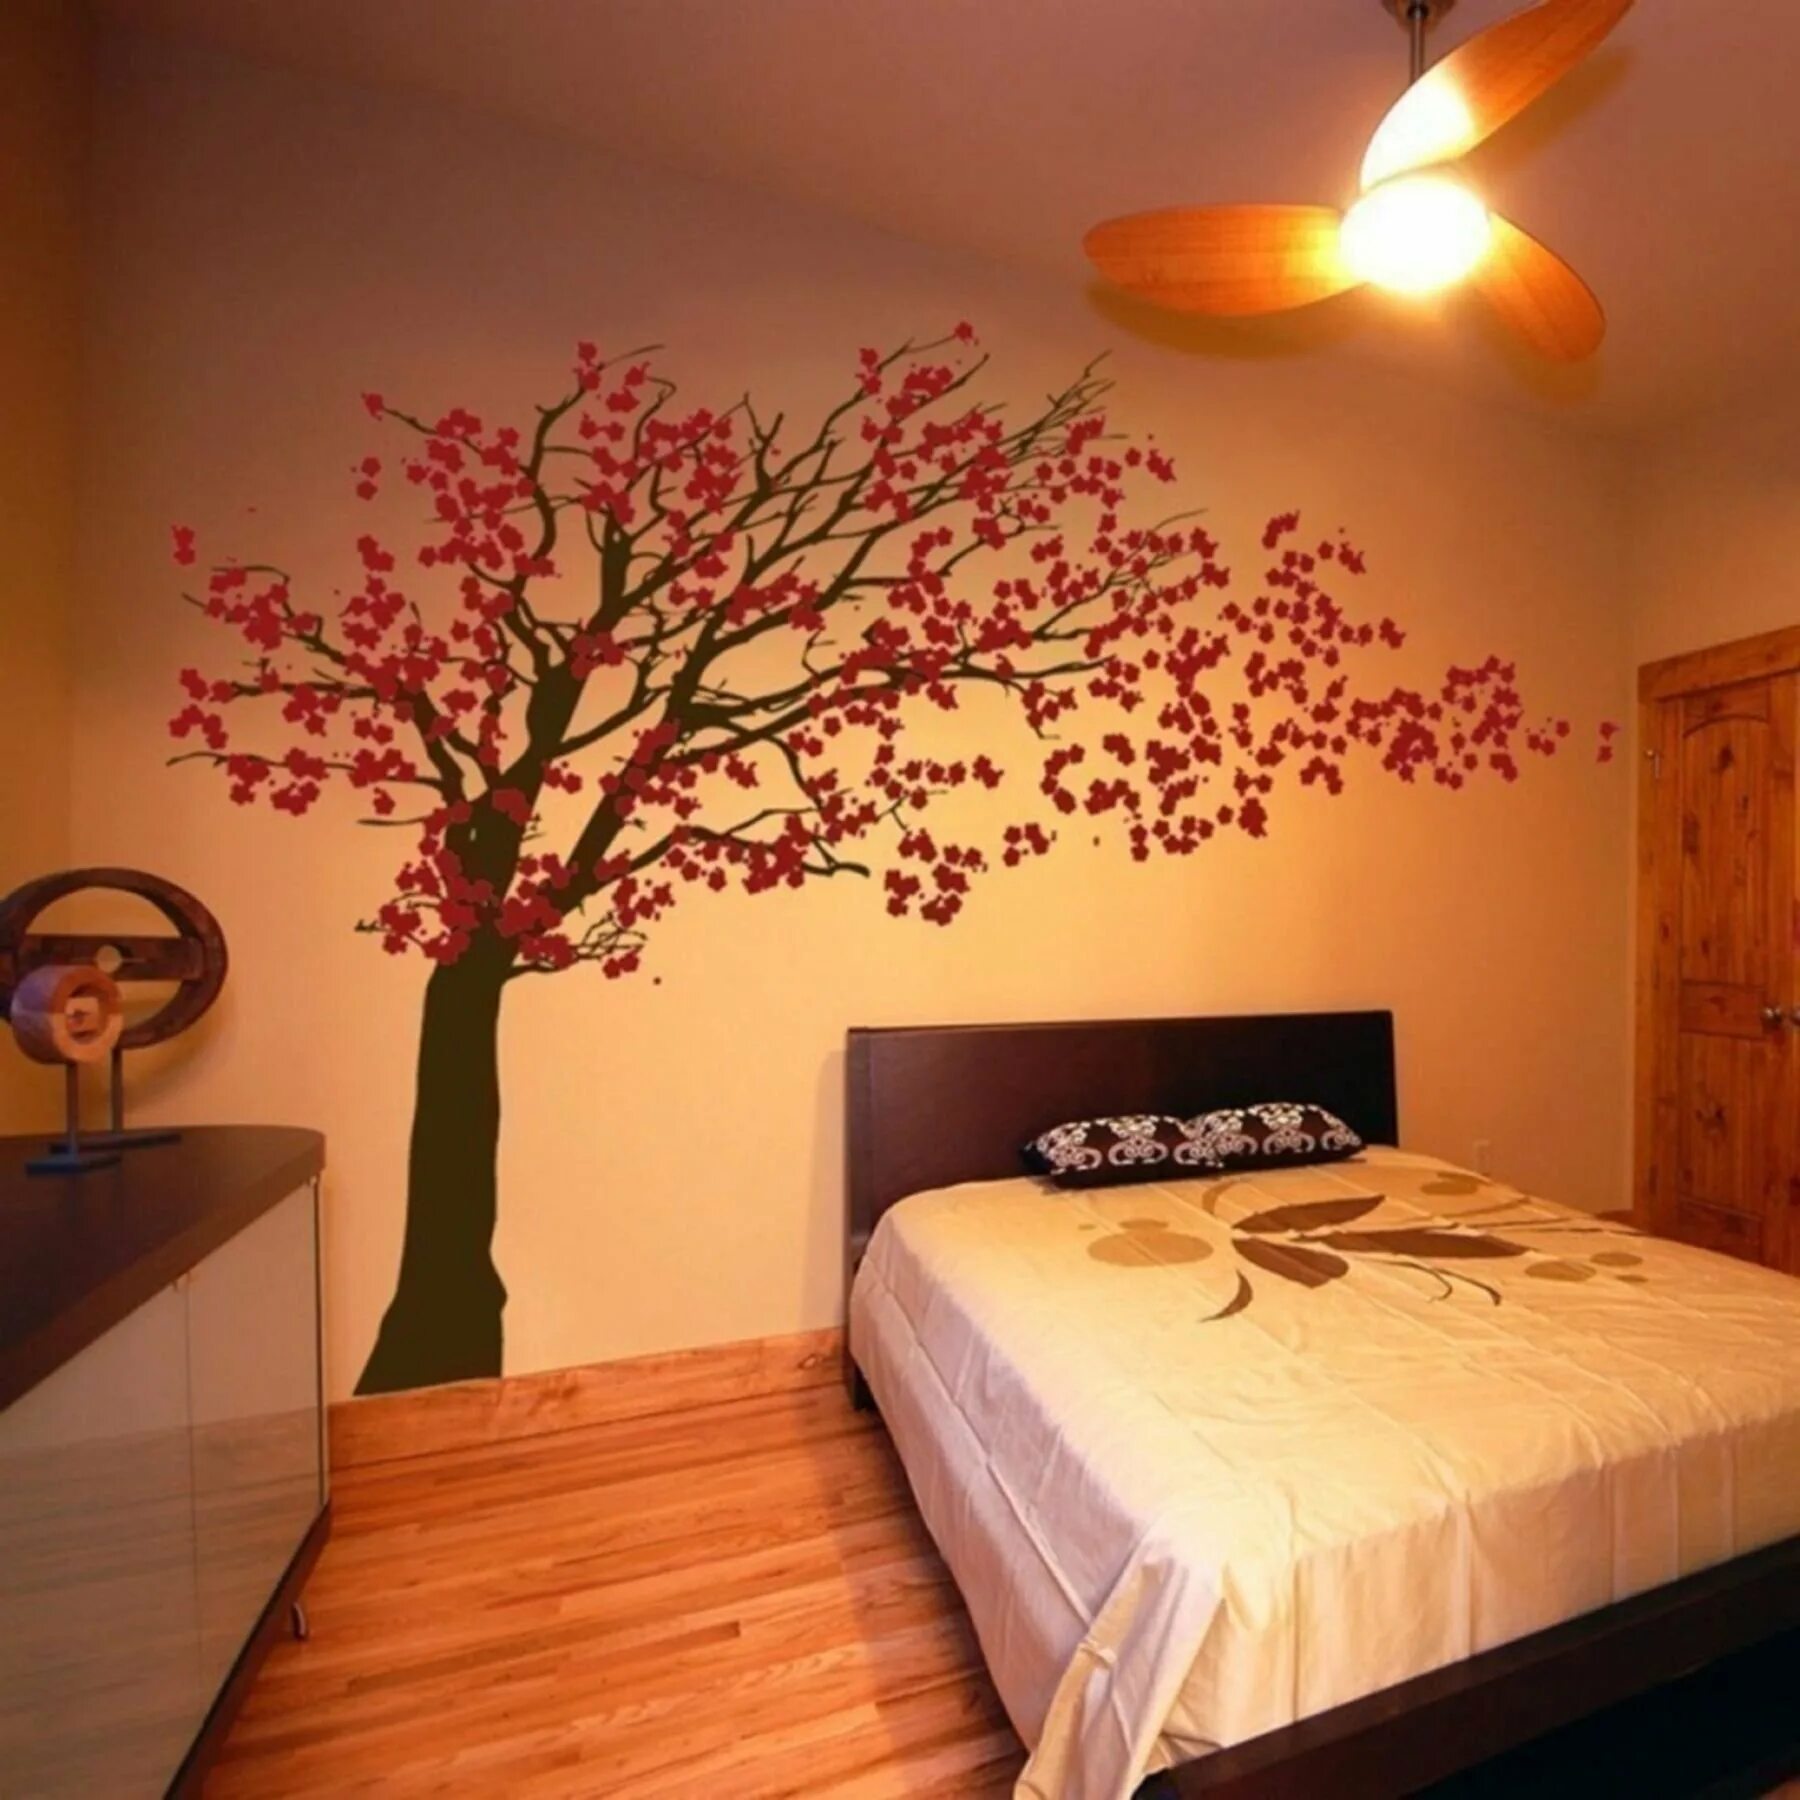 Сакура на стене. Украшение стен в квартире. Дерево на стене. Роспись стен в спальне. Дерево на стене в интерьере.